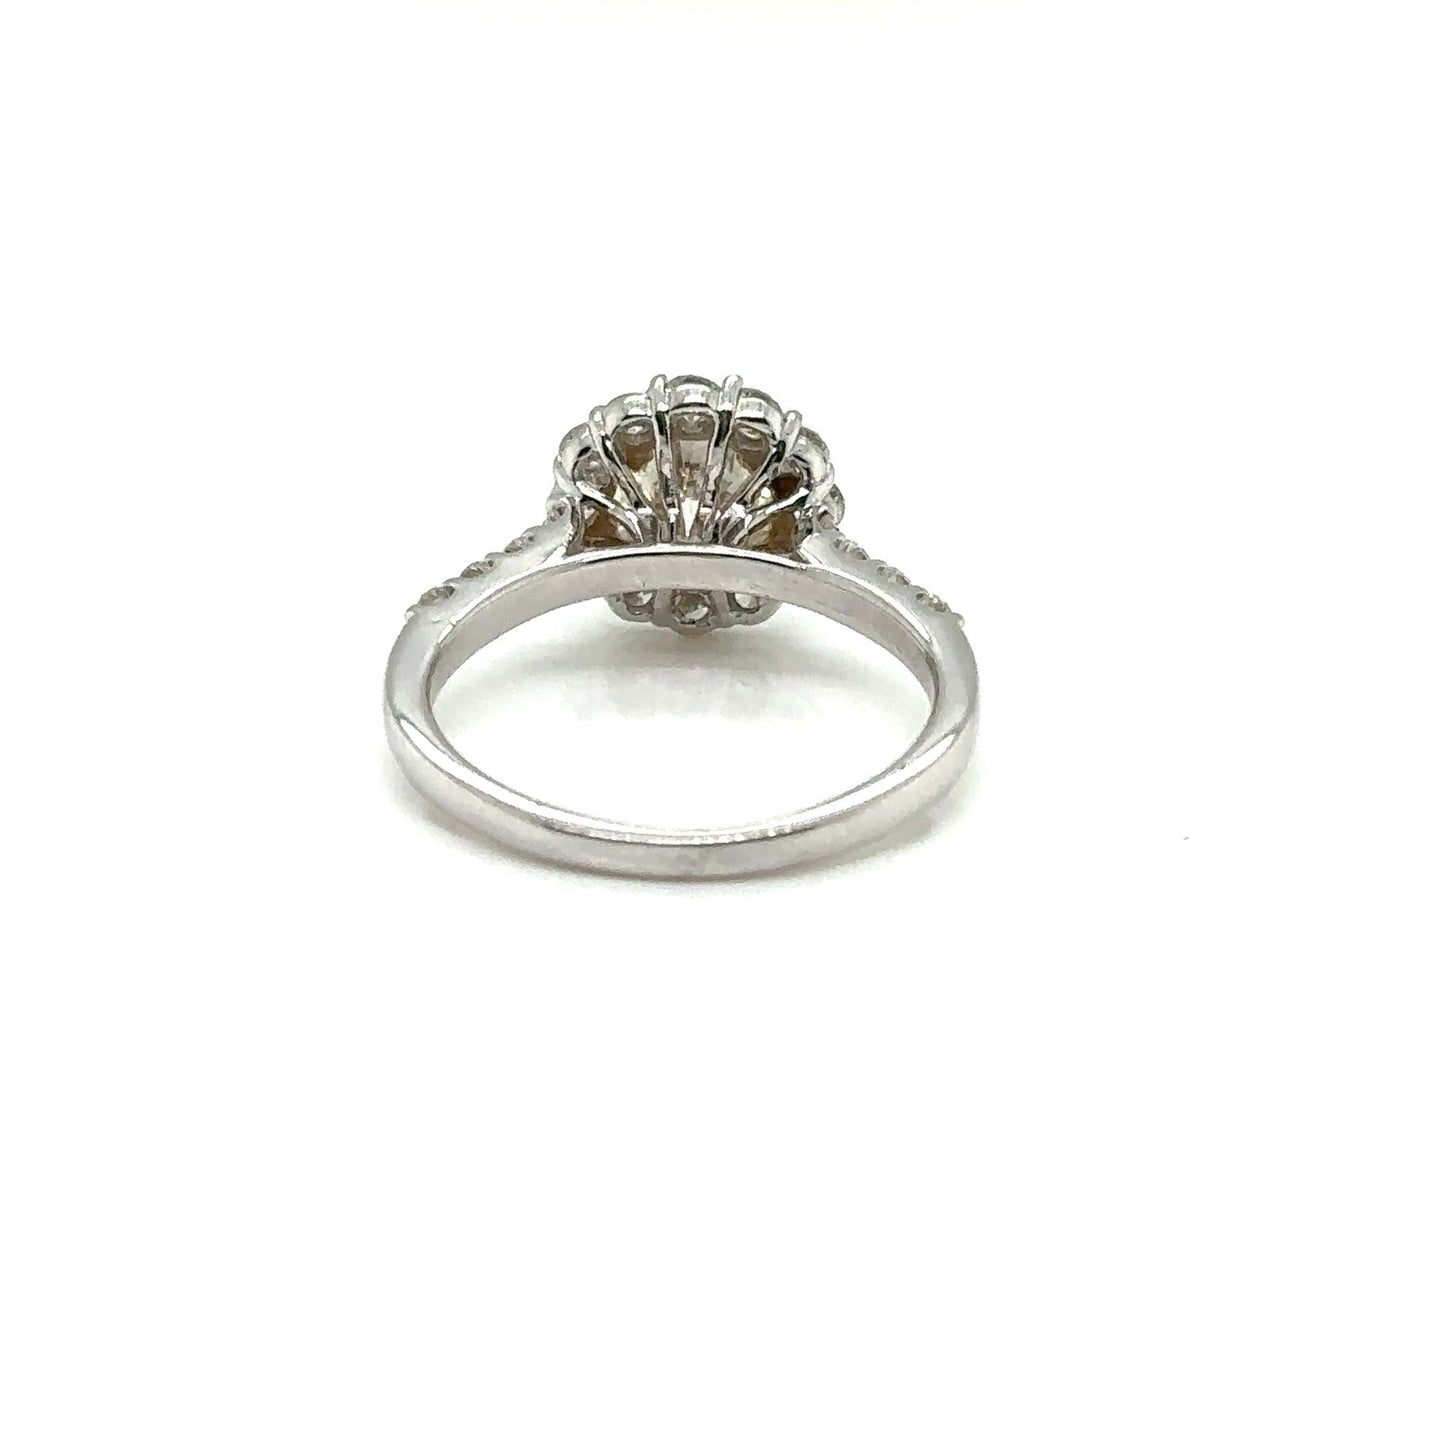 14k White Gold 2.21 Carat Round Shaped Halo Diamond Bridal Engagement Ring